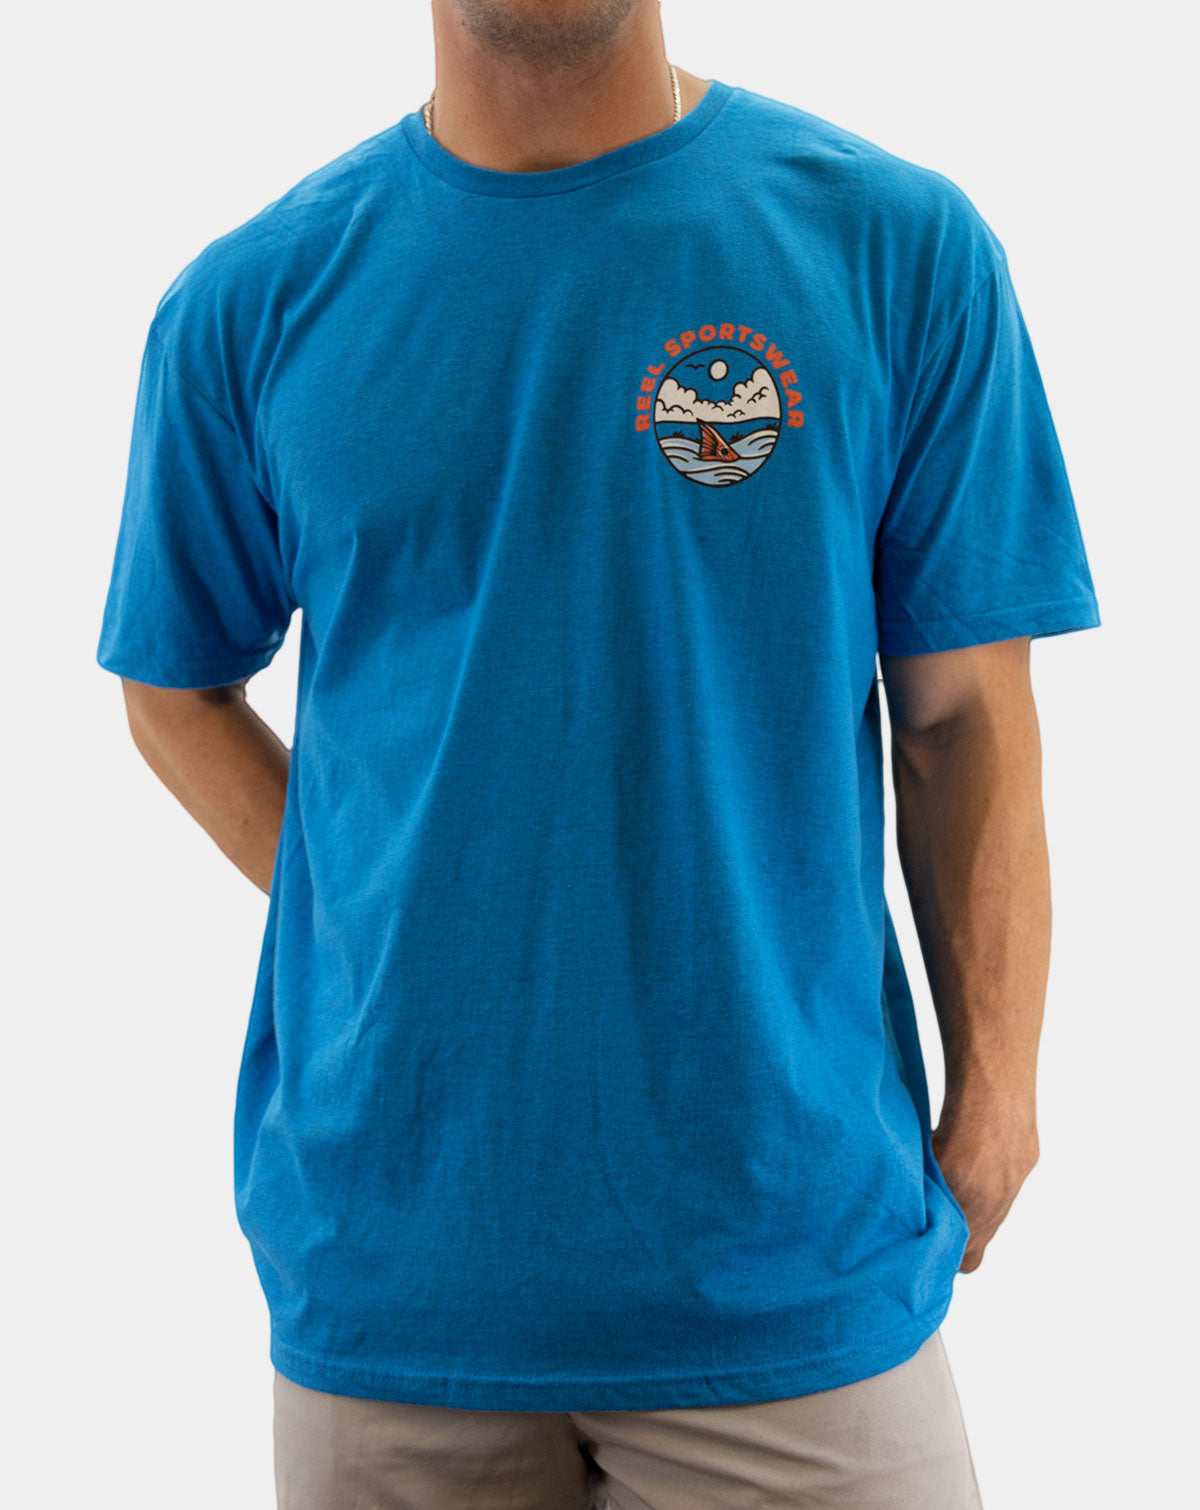 Tailer Swift - Reel Sportswear Fishing T-shirt